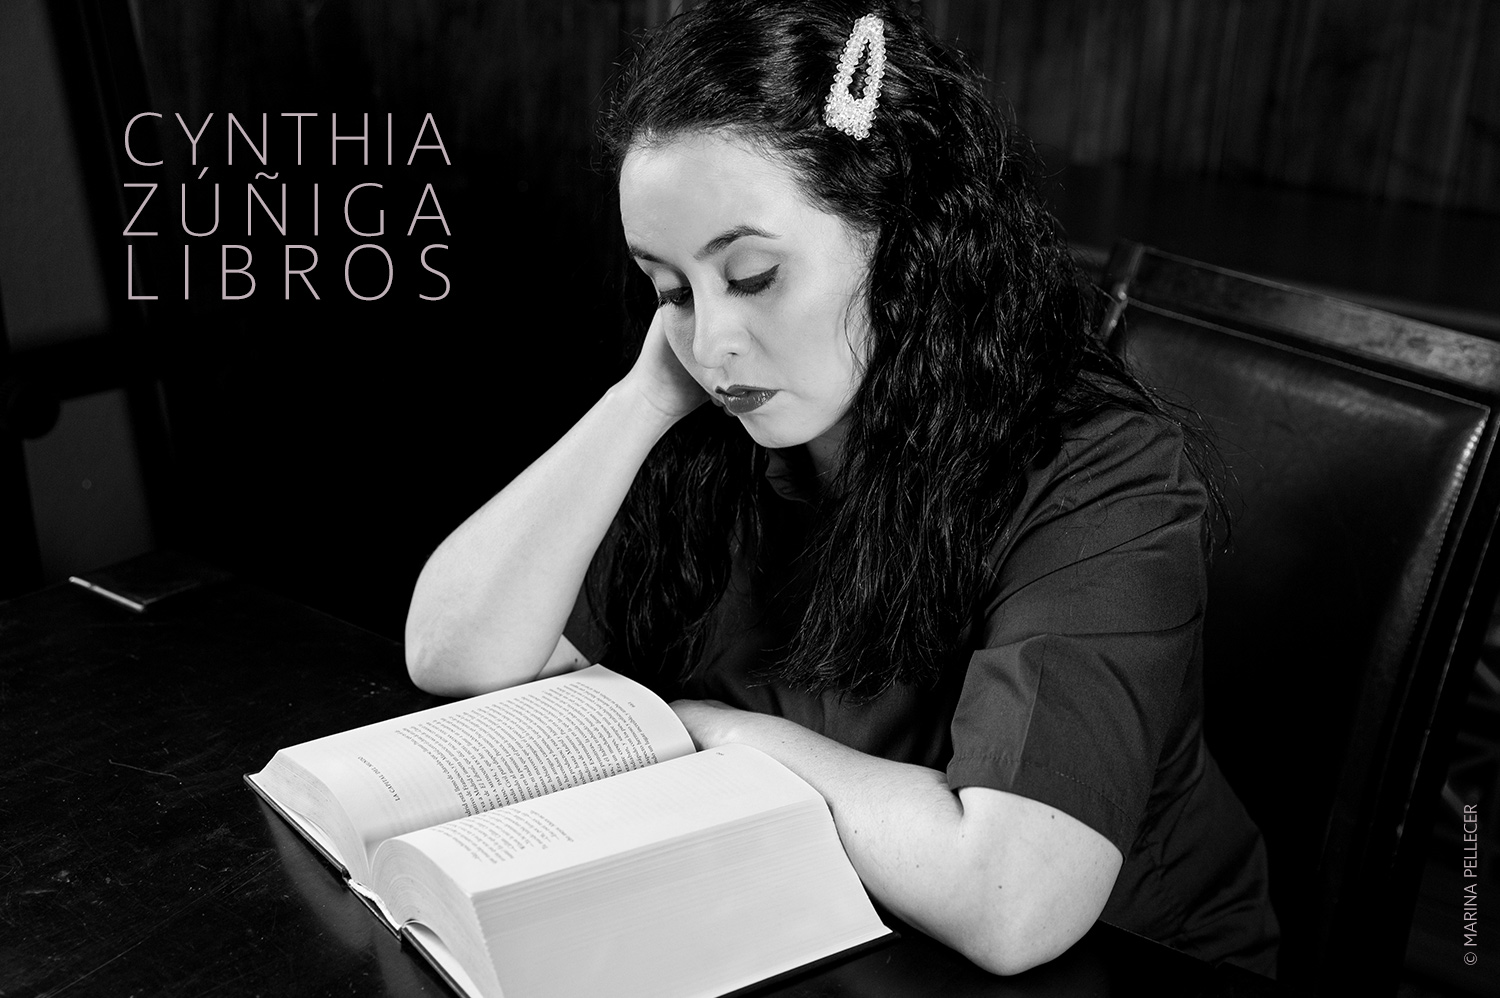 Cynthia Zuniga Libros